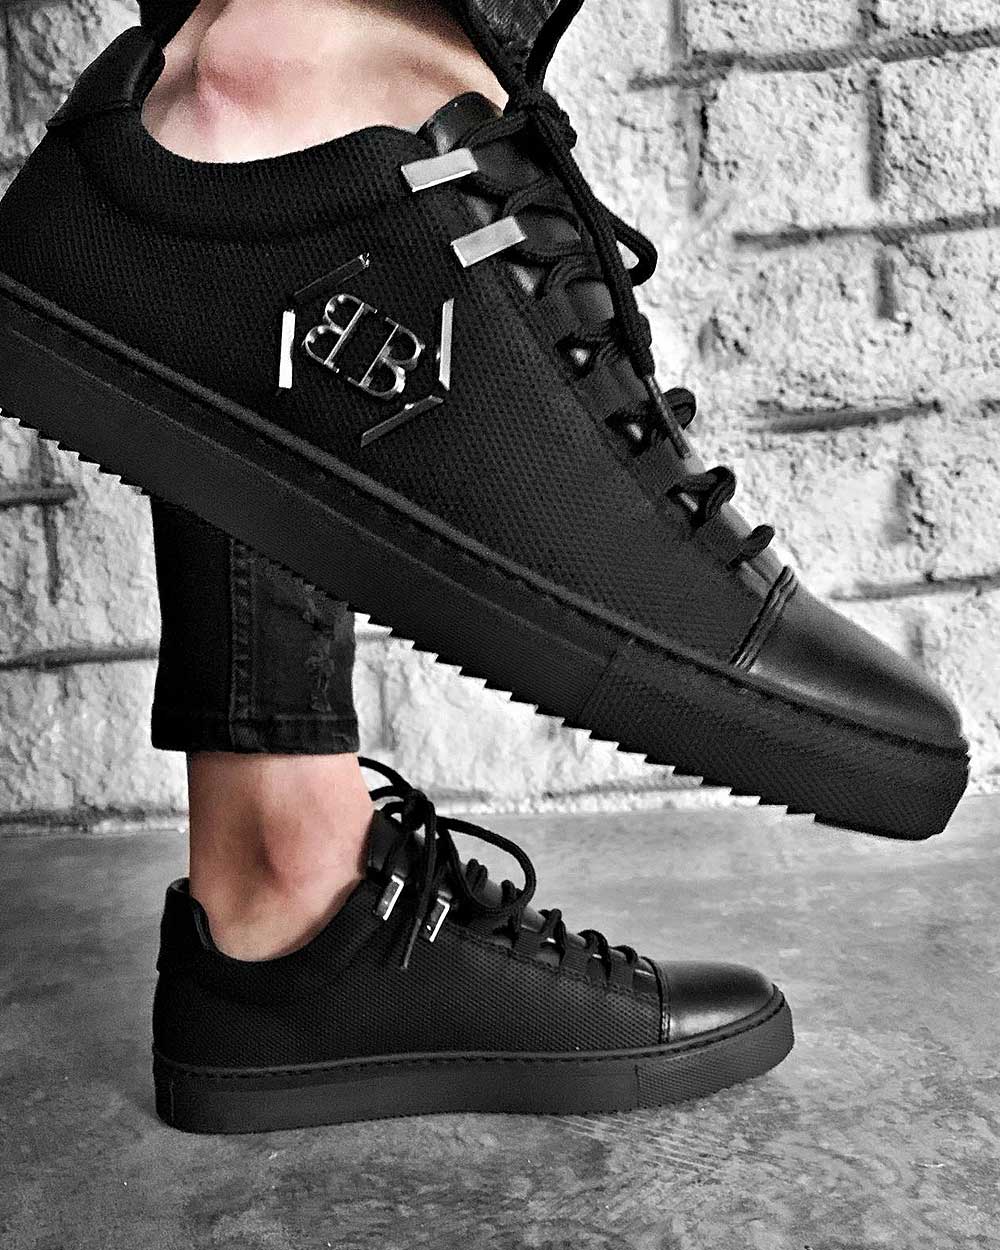 Chaussures Sneakers noir tendance avec logo metal et semelles noires crantée pour homme